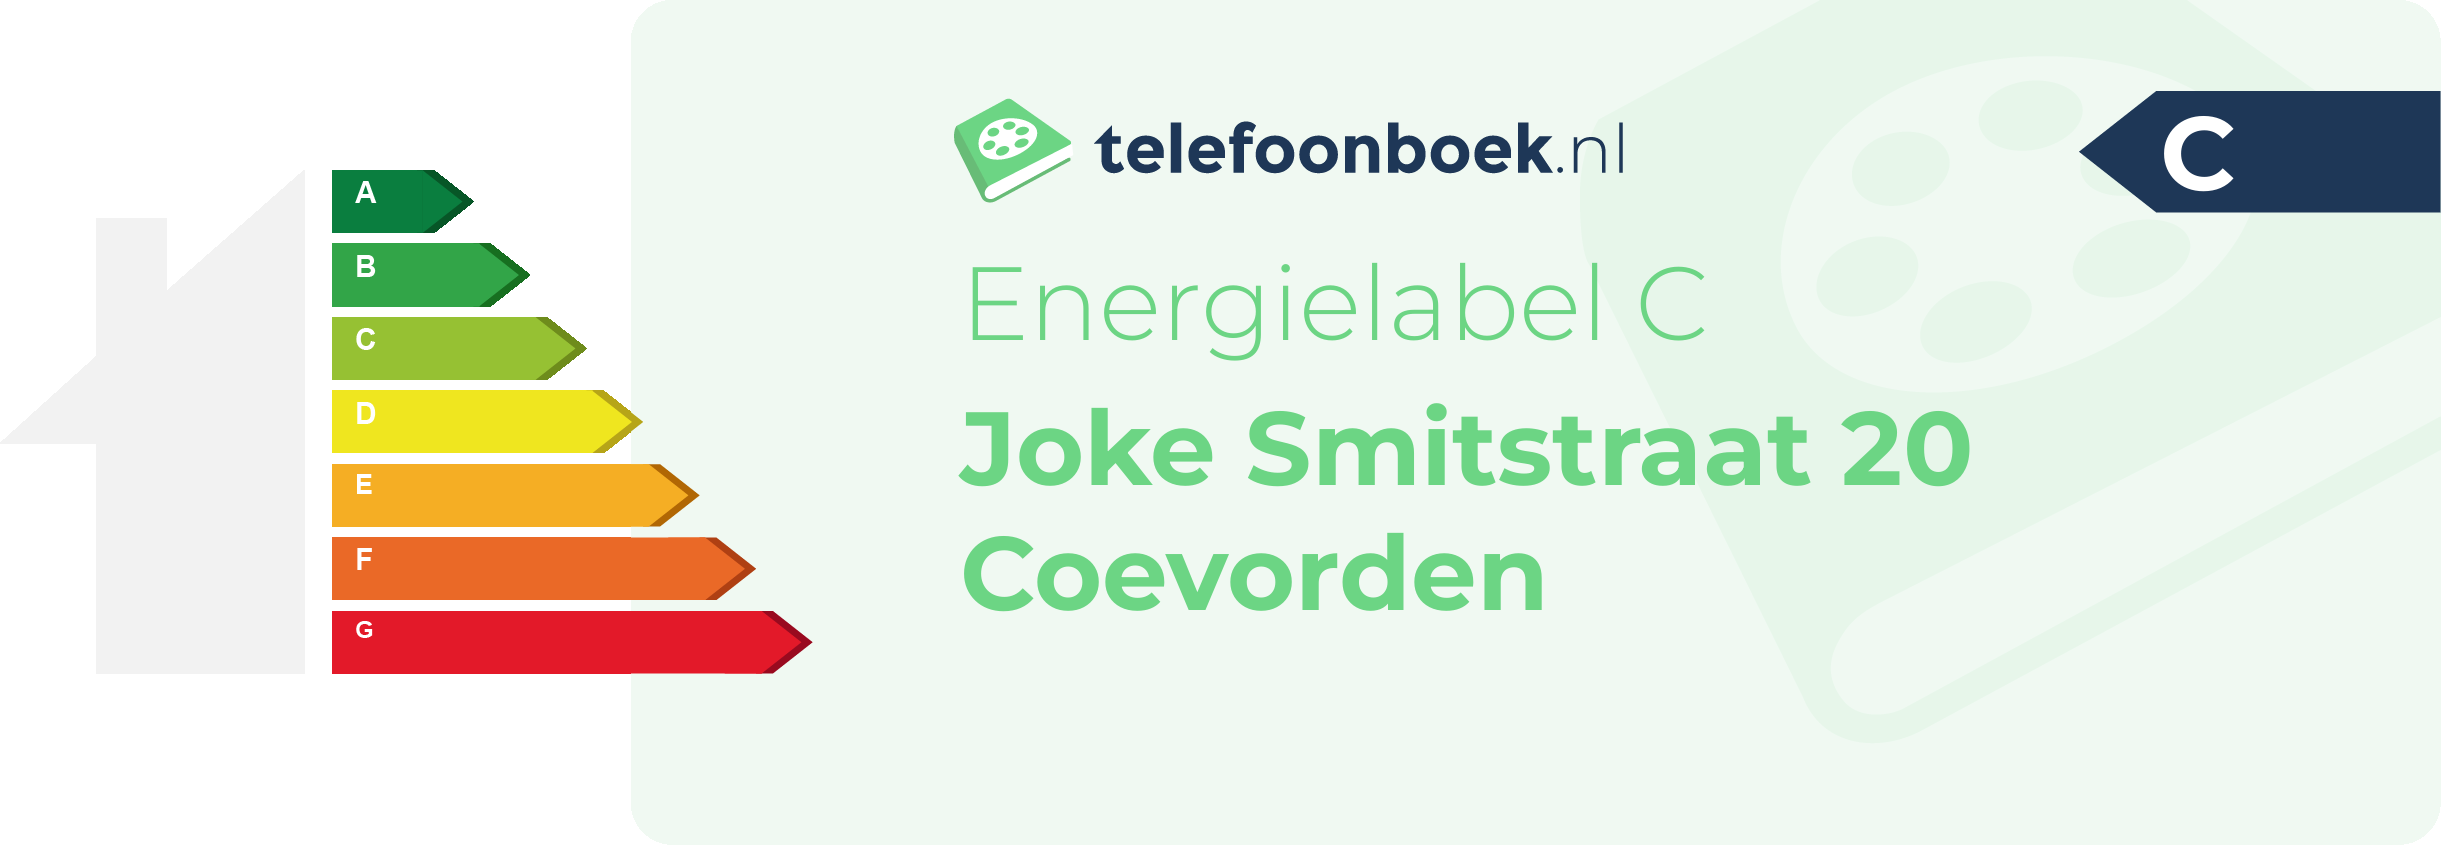 Energielabel Joke Smitstraat 20 Coevorden